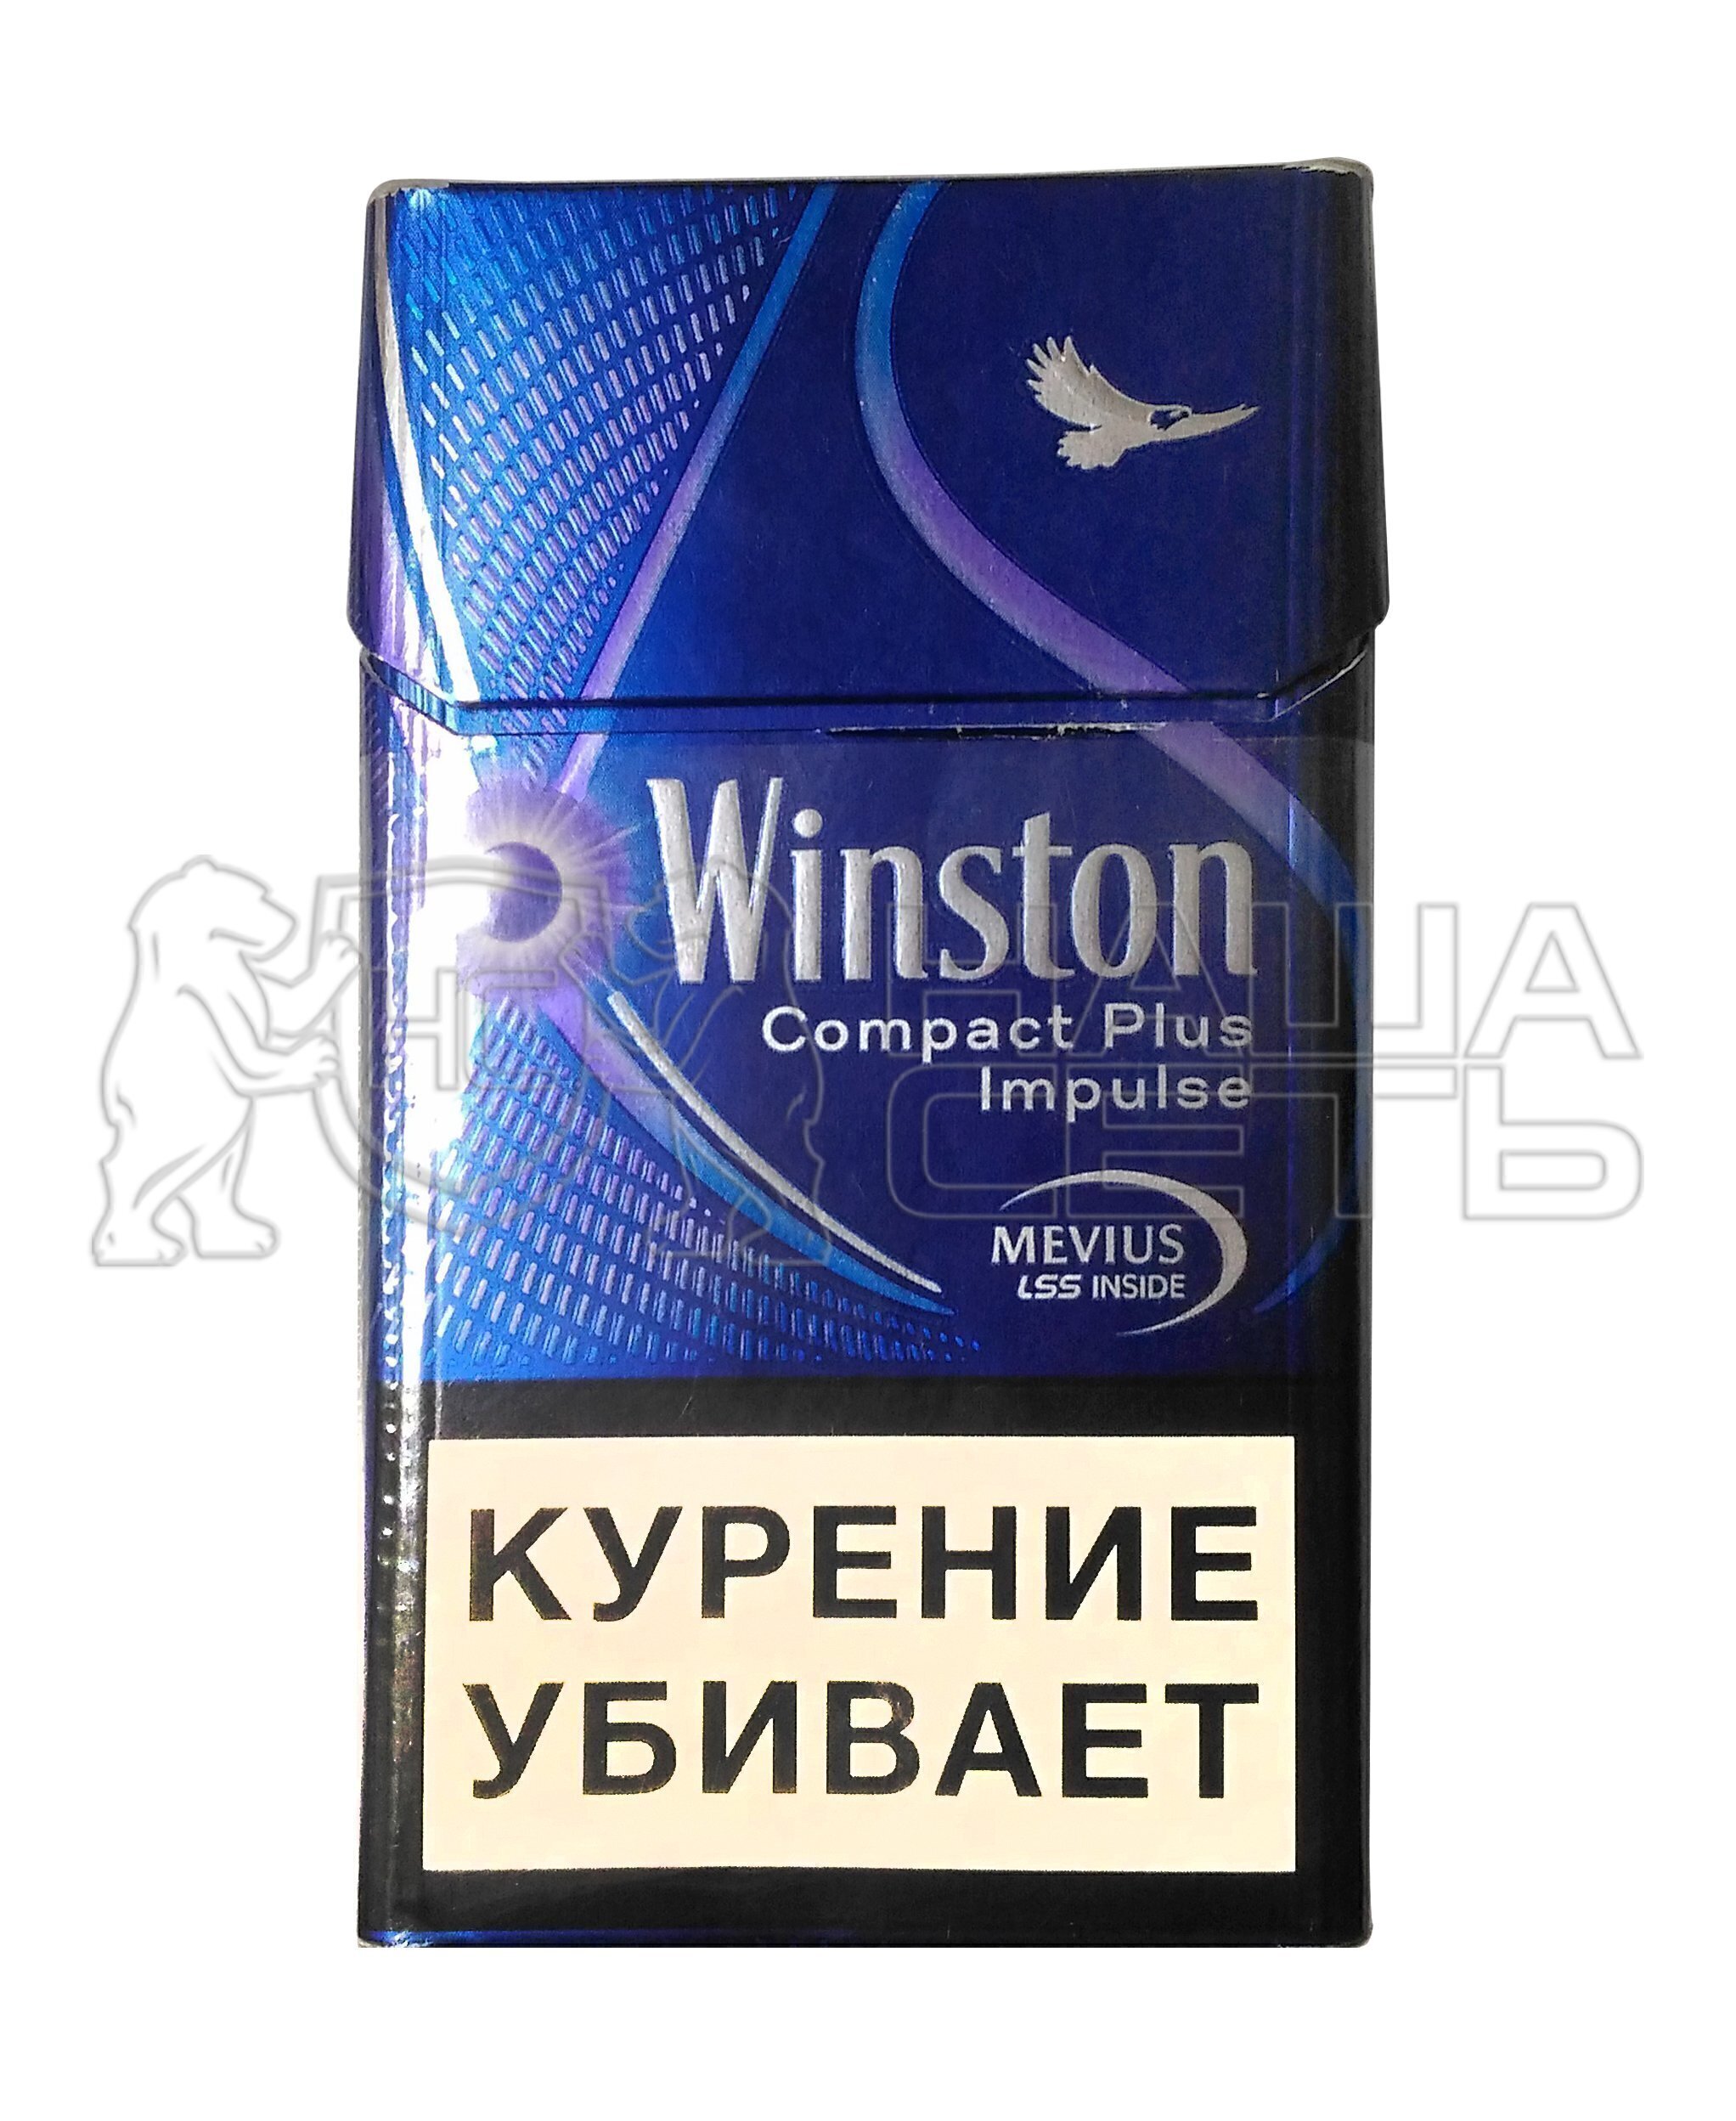 Винстон компакт фиолетовый. Сигареты Winston Импульс компакт. Сигареты Винстон компакт Импульс. Сигареты Winston Compact Plus Impulse. Винстон синий с кнопкой Импульс.